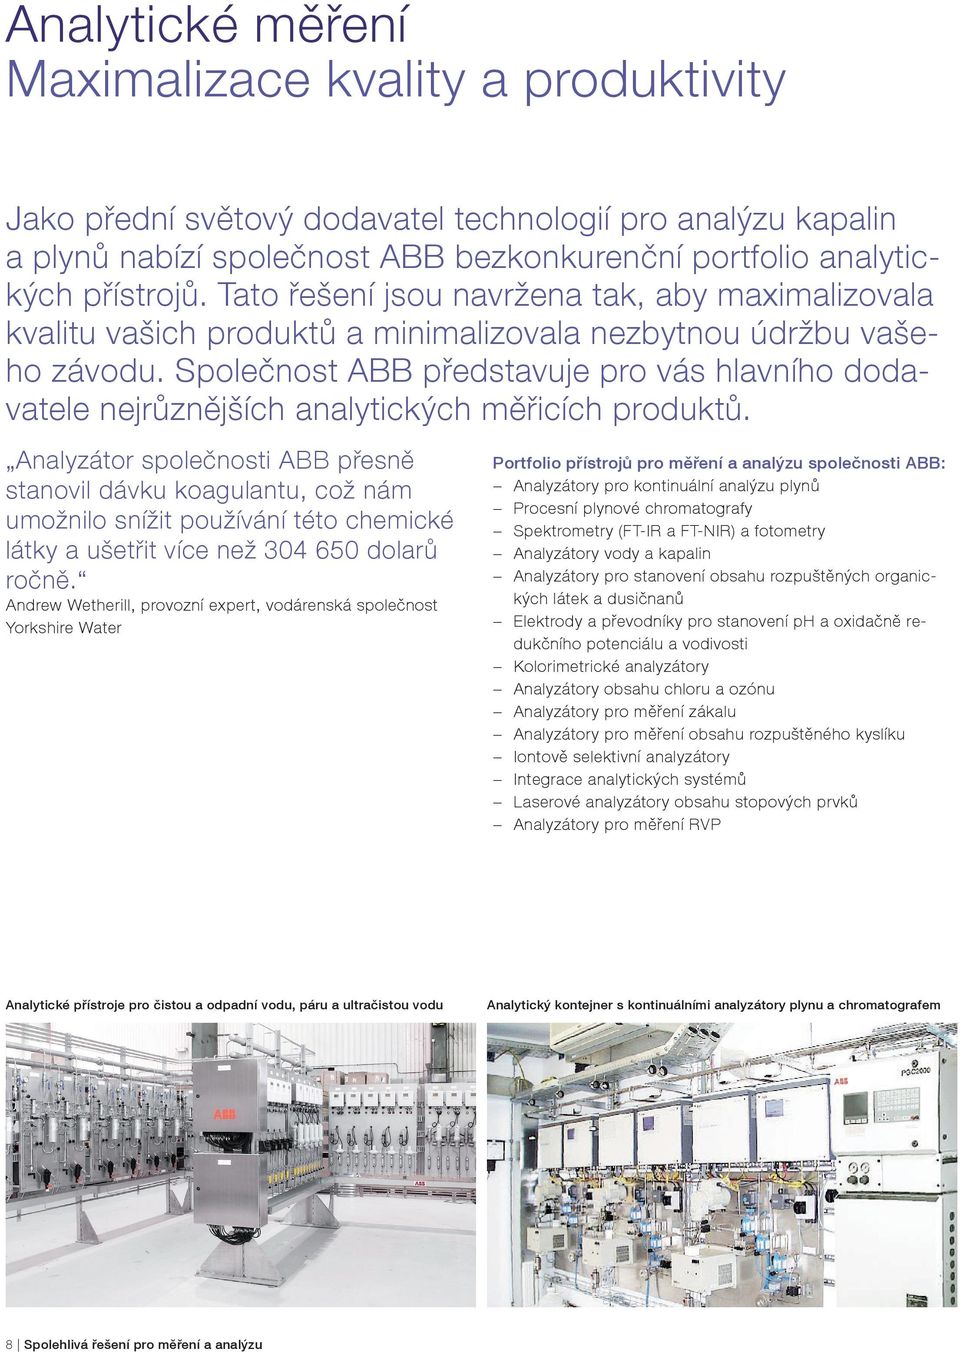 Společnost ABB představuje pro vás hlavního dodavatele nejrůznějších analytických měřicích produktů.